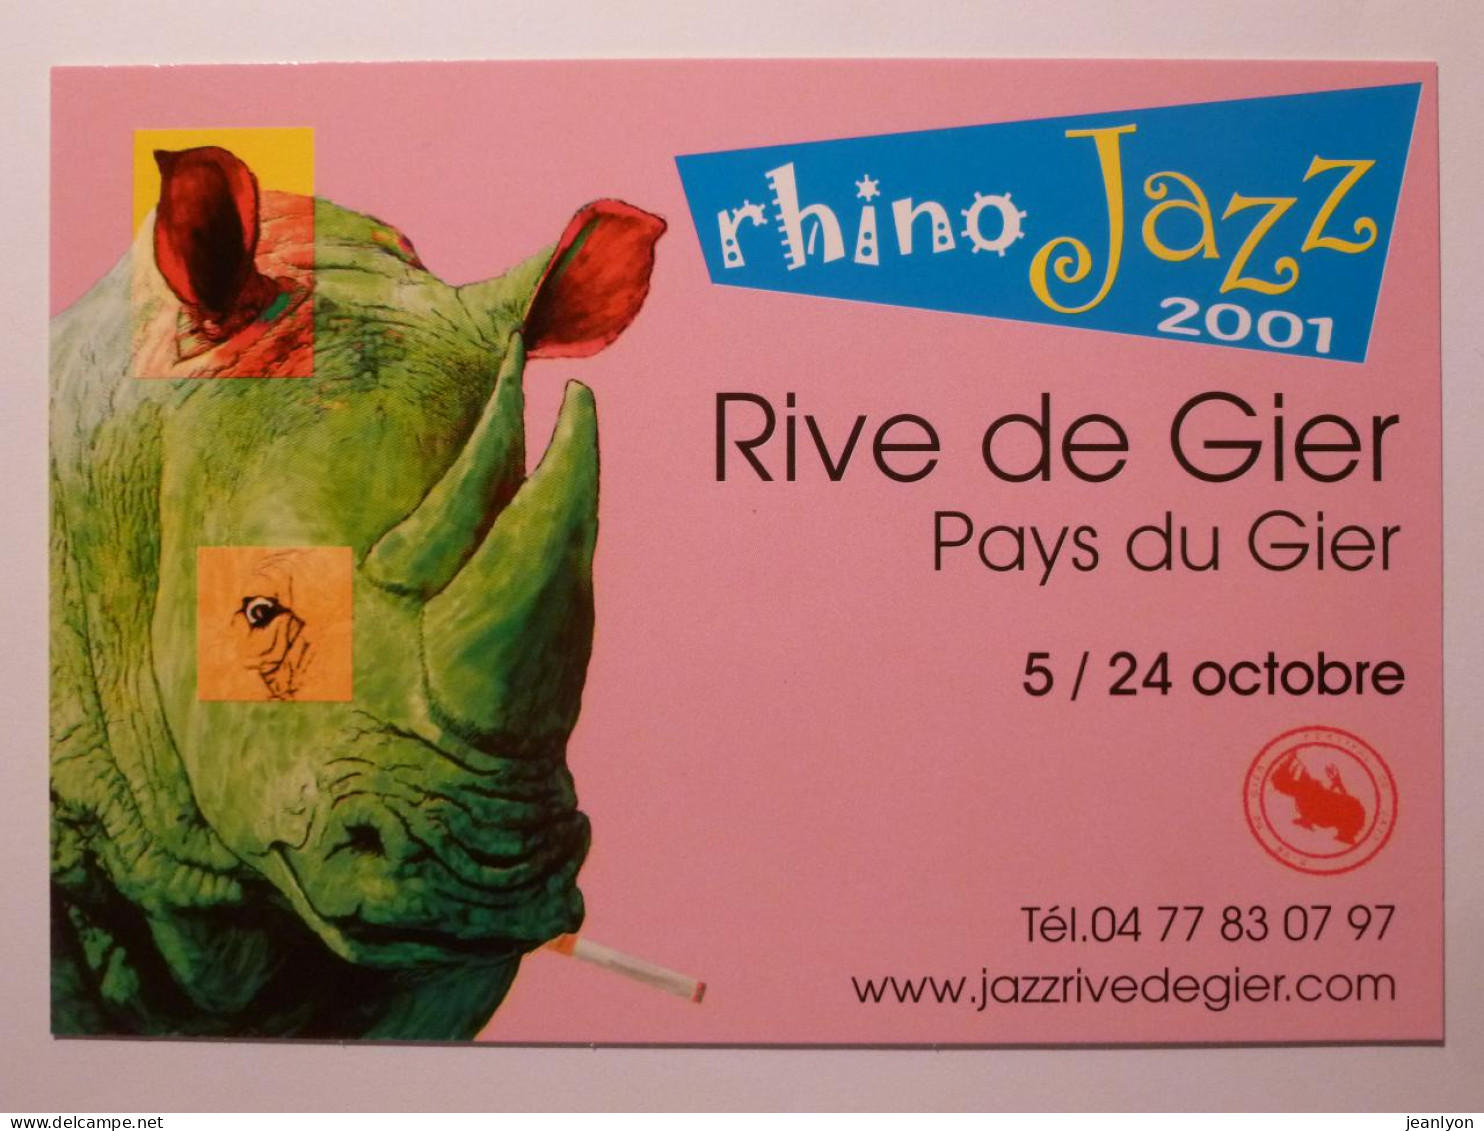 RHINOCEROS VERT Avec Cigarette Dans La Bouche - Rhino Jazz 2001 - Rive De Gier ( Loire ) - Carte Publicitaire - Rinoceronte